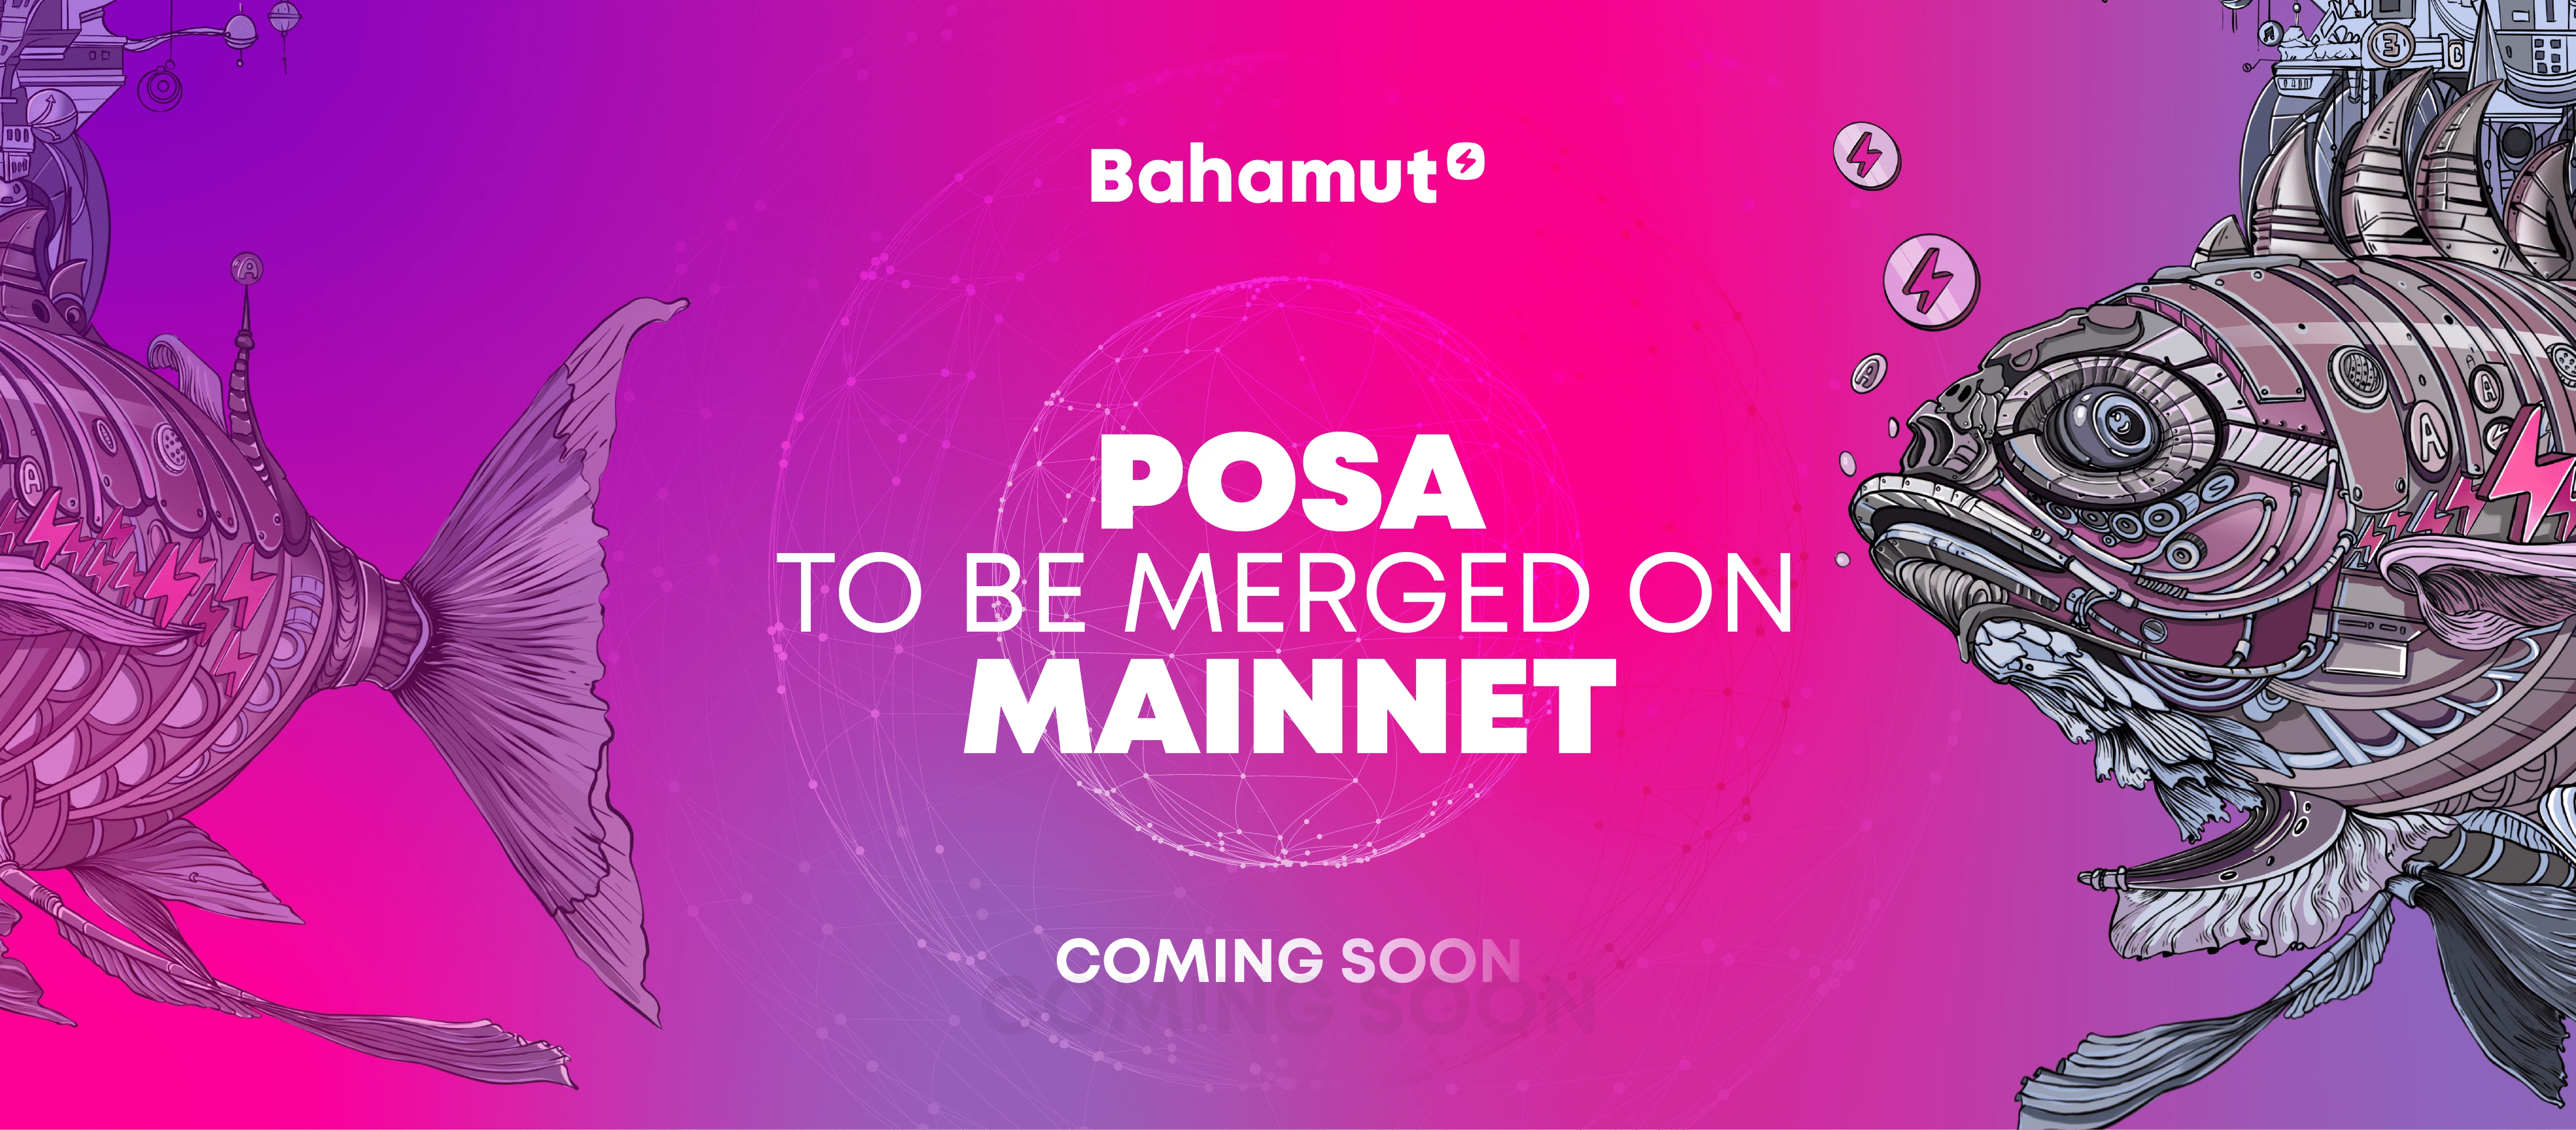 Bahamut, Oasis testnet üzerinde PoSA birleştirmesini başarıyla tamamladı, mainnet’teki birleştirme ise yakında gerçekleşecek 